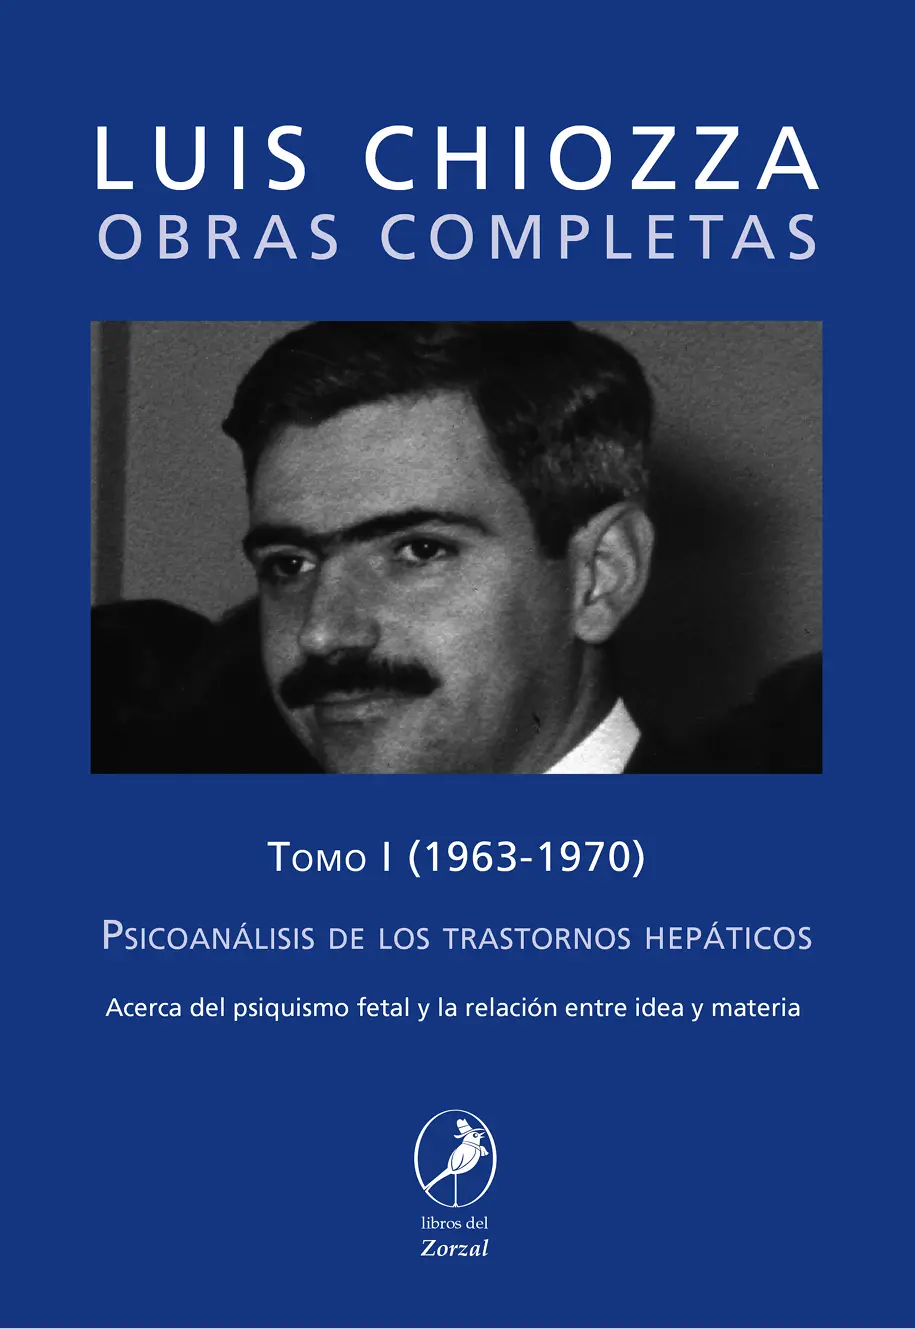 Luis Chiozza OBRAS COMPLETAS Tomo I Psicoanálisis de los trastornos hepáticos - фото 1